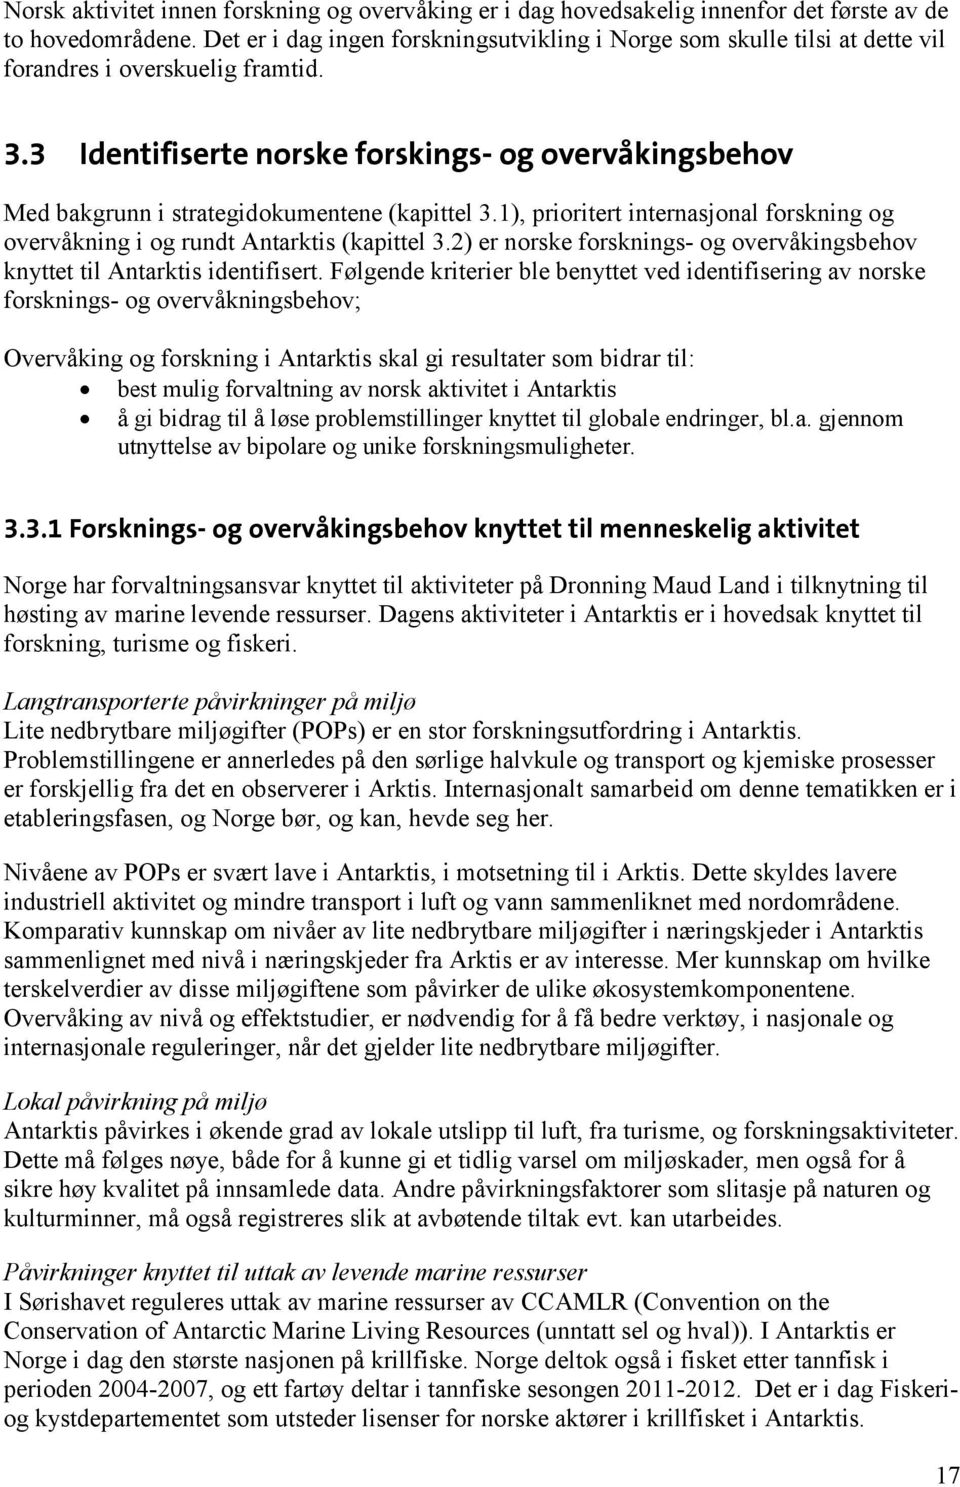 3 Identifiserte norske forskings- og overvåkingsbehov Med bakgrunn i strategidokumentene (kapittel 3.1), prioritert internasjonal forskning og overvåkning i og rundt Antarktis (kapittel 3.